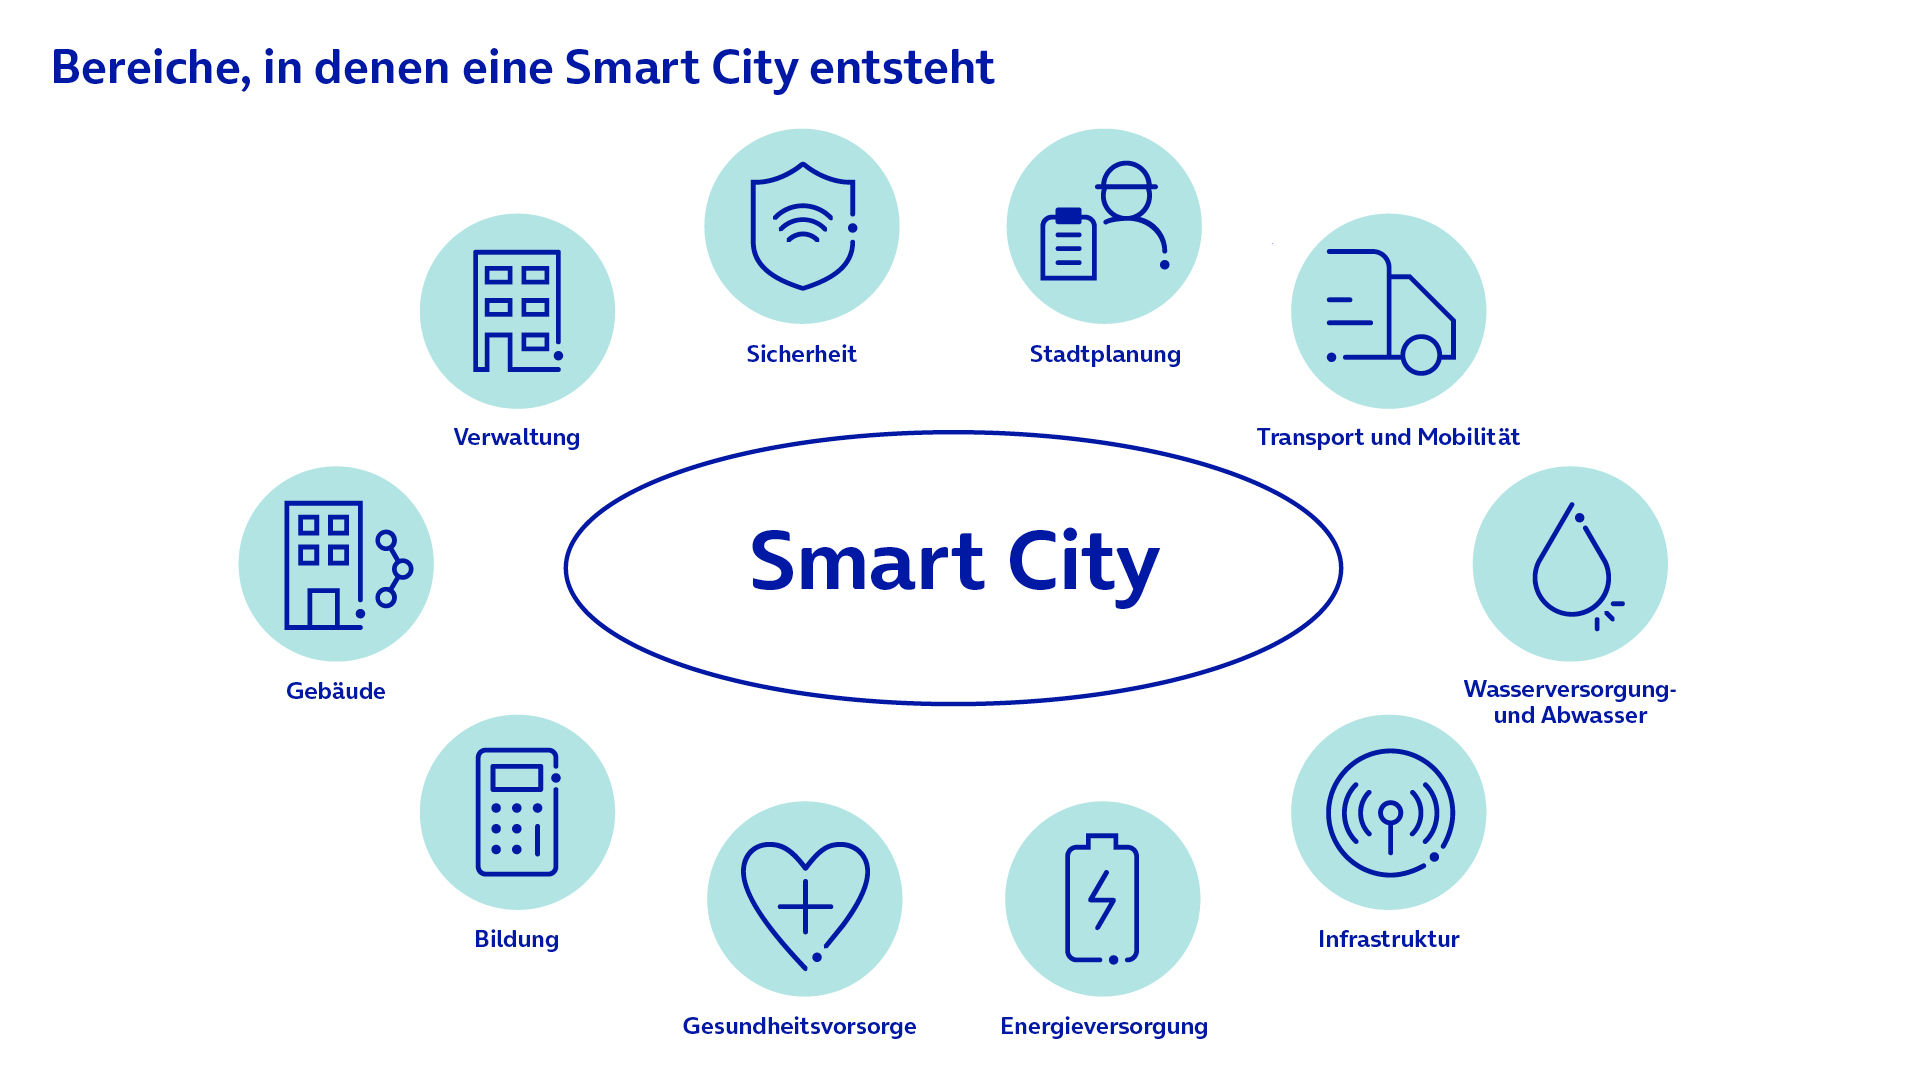 Die Infografik zeigt die Sektoren in denen durch Digitalisierung und IoT eine Smart City entsteht.